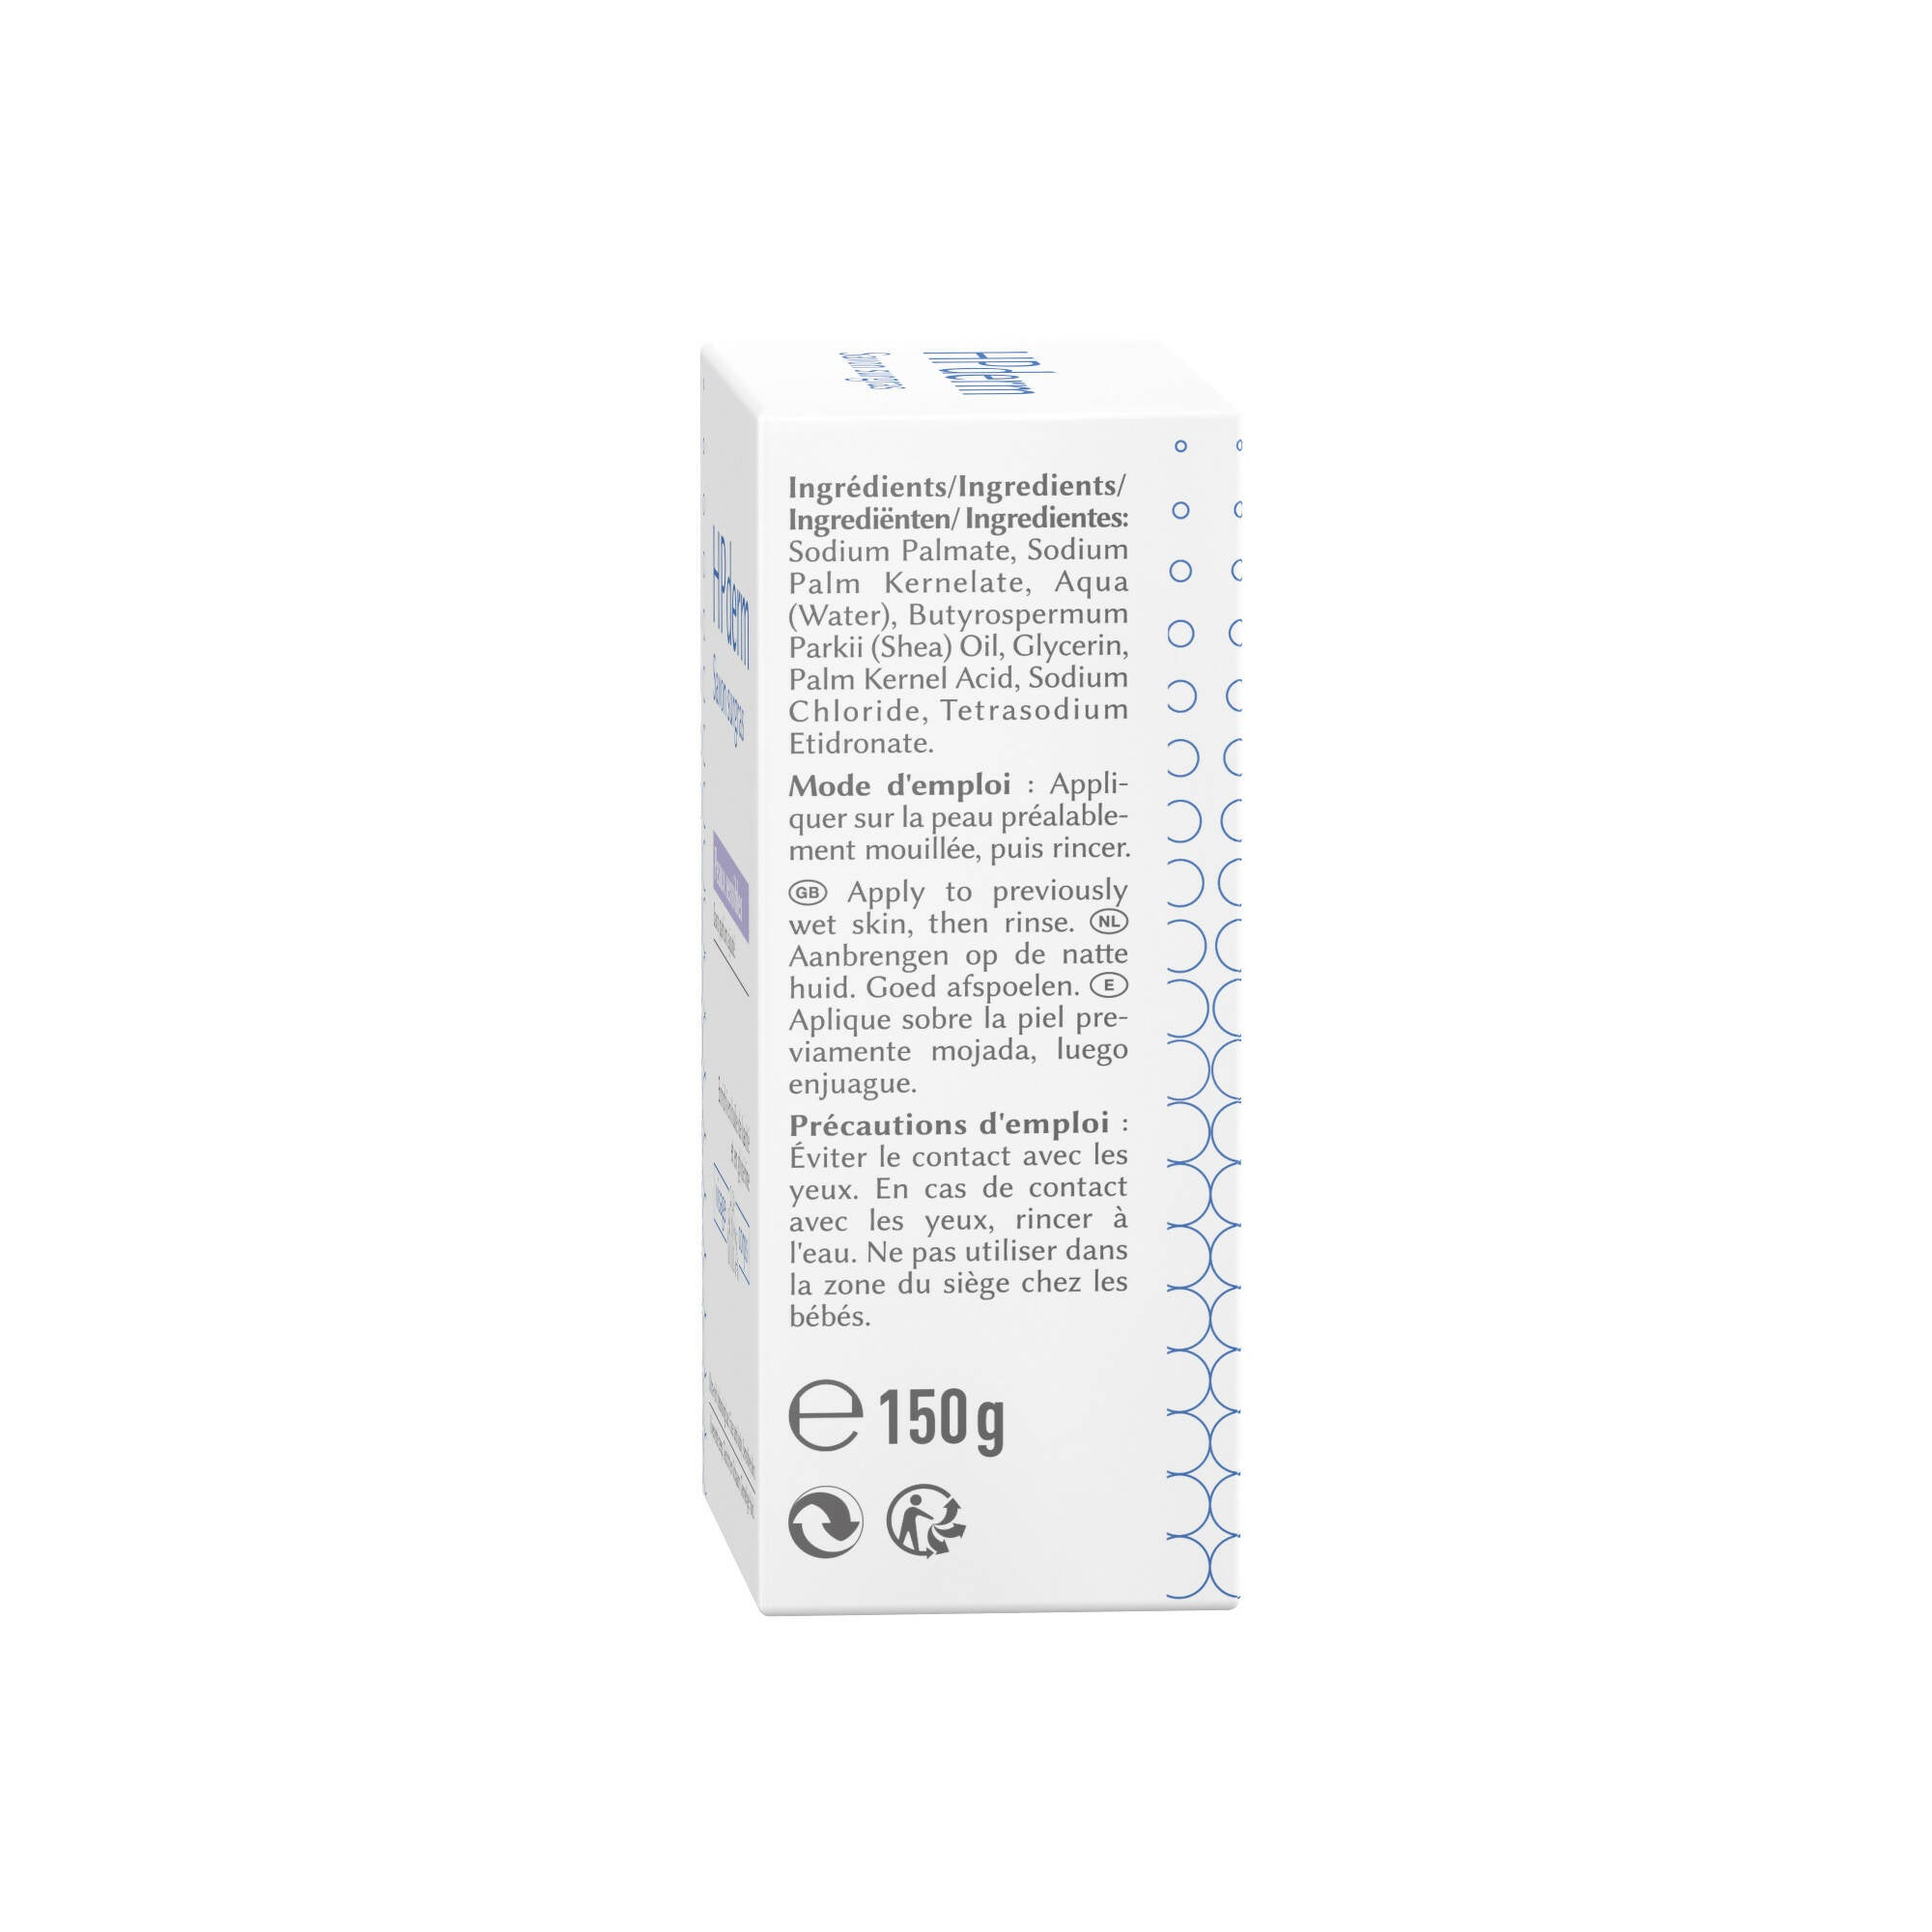 SORIFA – Komplette Schachtel mit 24 Stück – HPderm Surgras-Seife – Empfindliche Haut – 99,95 % natürliche Inhaltsstoffe – Angereichert mit Sheaöl und Glycerin – Für die Familie, auch für Kleinkinder – Neutraler pH-Wert, frei von Duftstoffen – Riegel 150 g